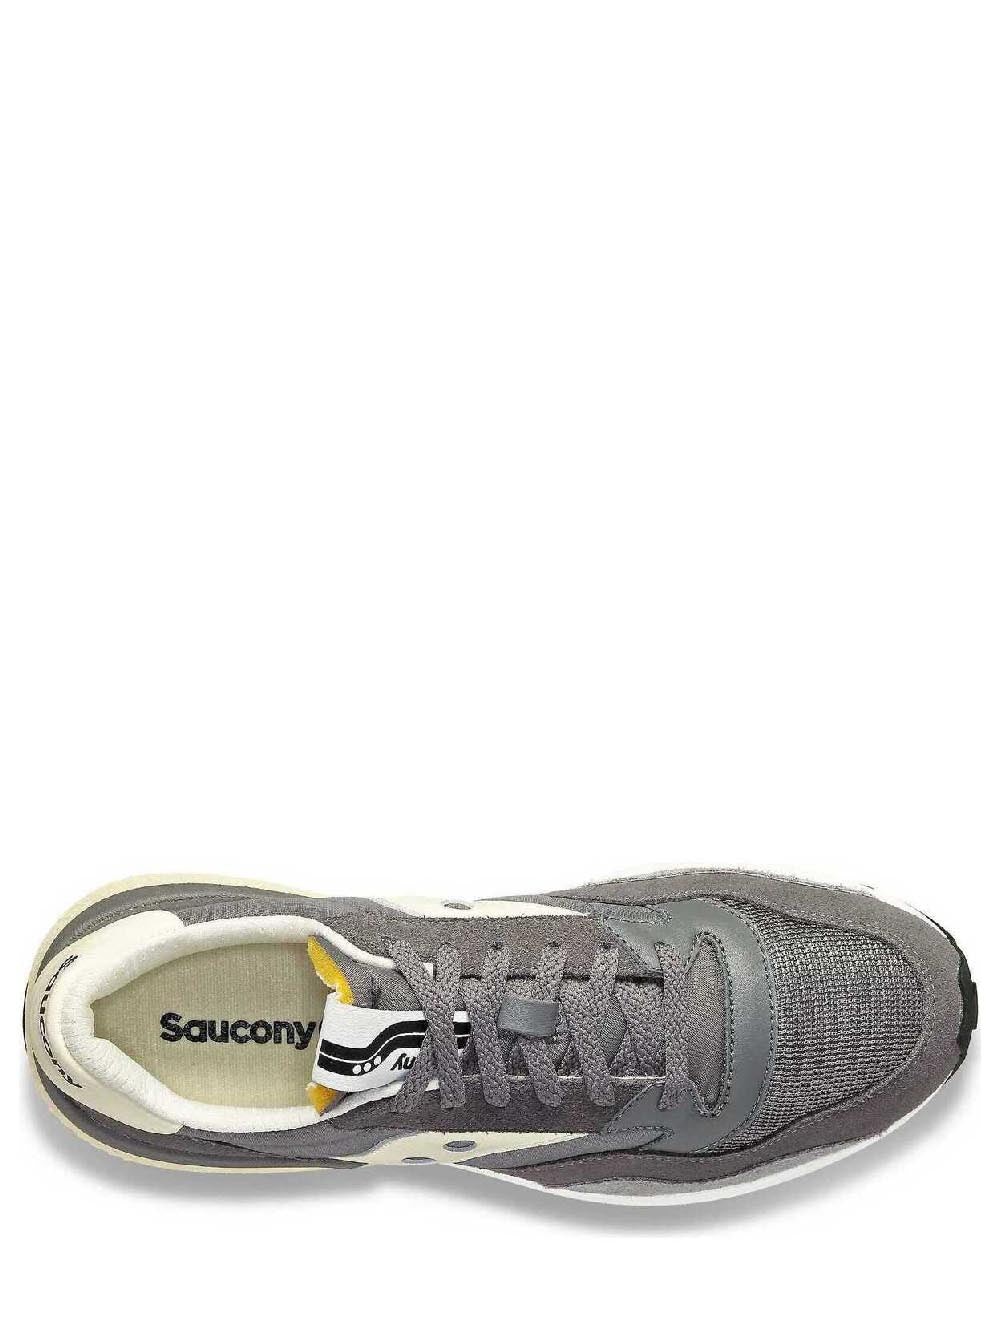 SAUCONY Sneakers Unisex Grigio/Crema